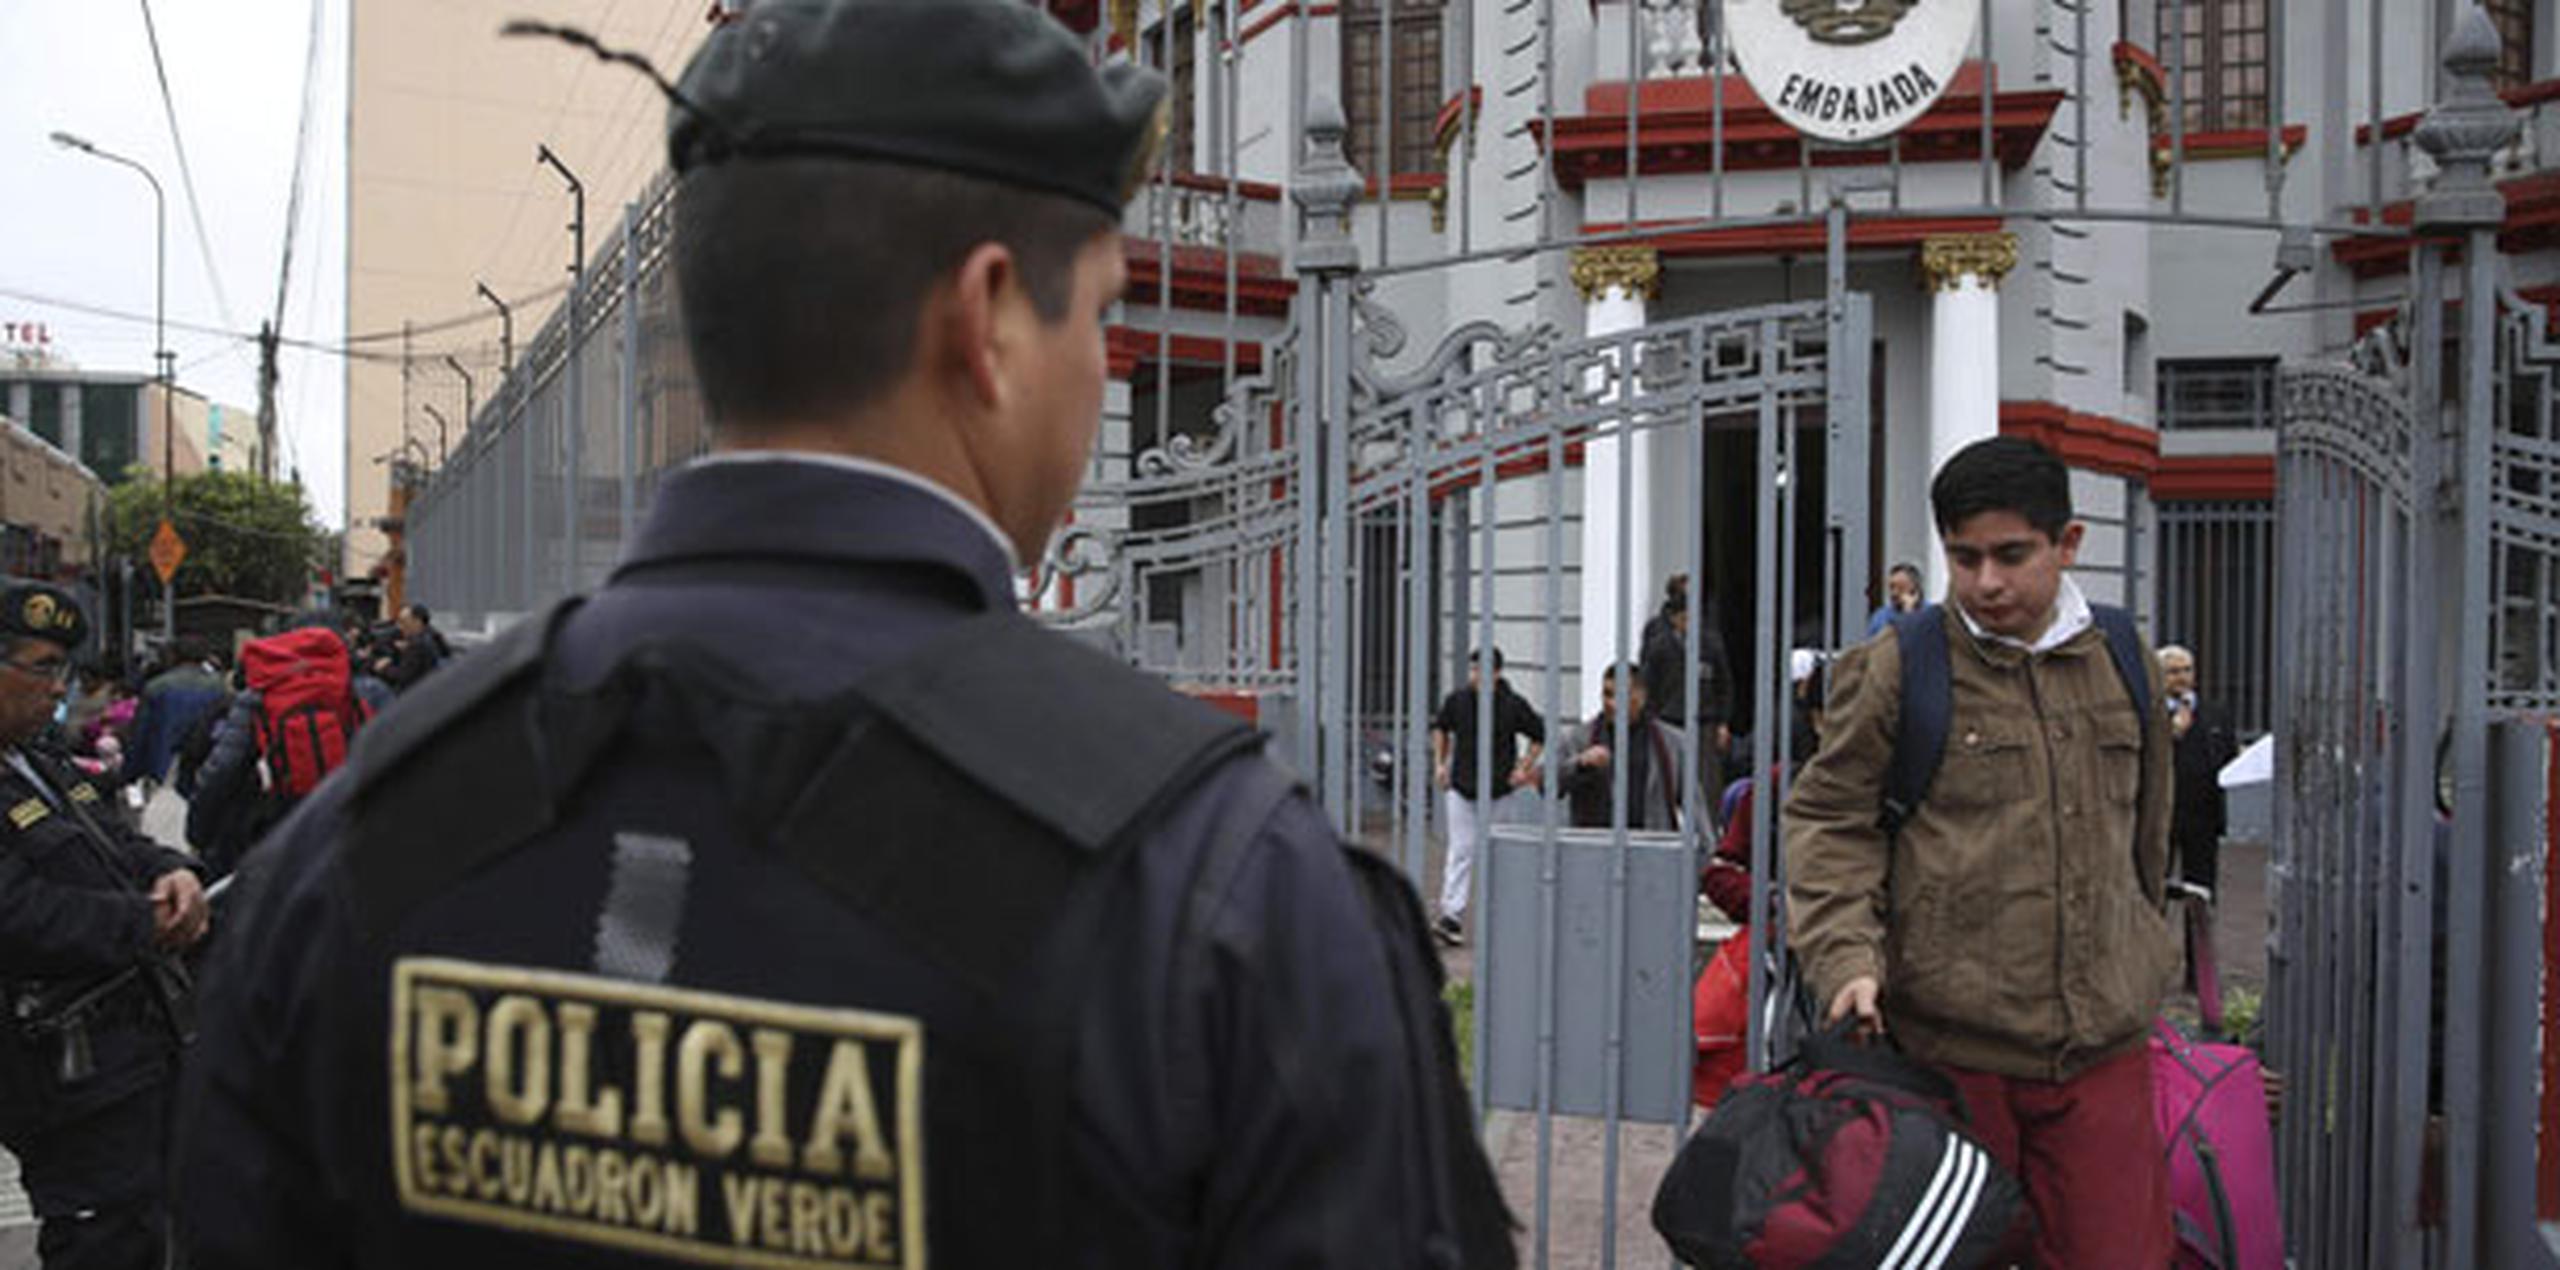 Otro grupo de venezolanos entrevistado a pocos metros de la embajada prefería quedarse en Perú que volver a su país en crisis. (AP)